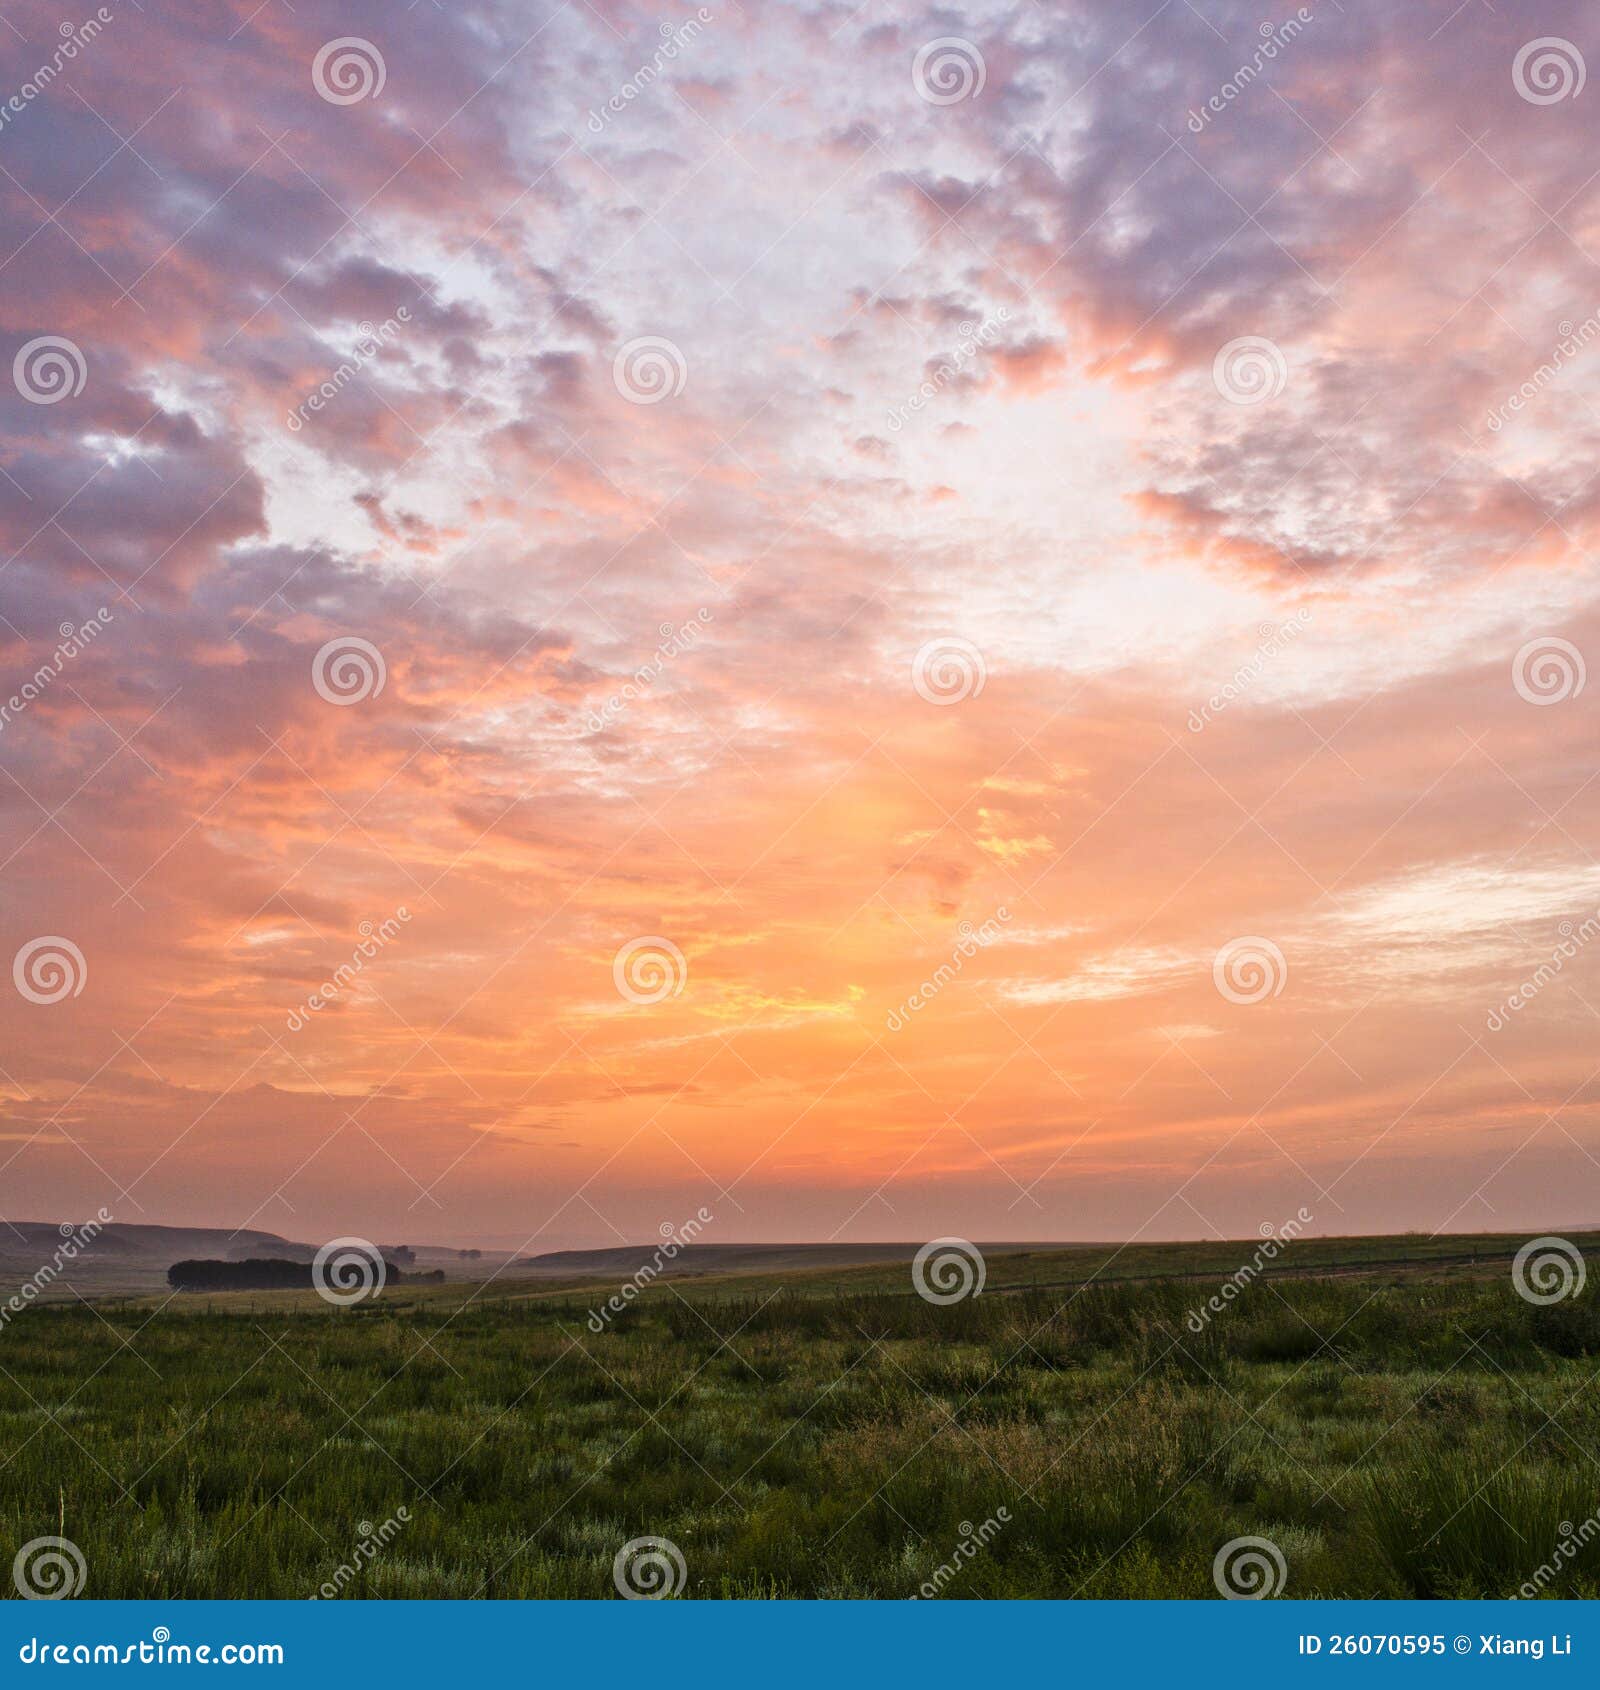 sunrise and grassland